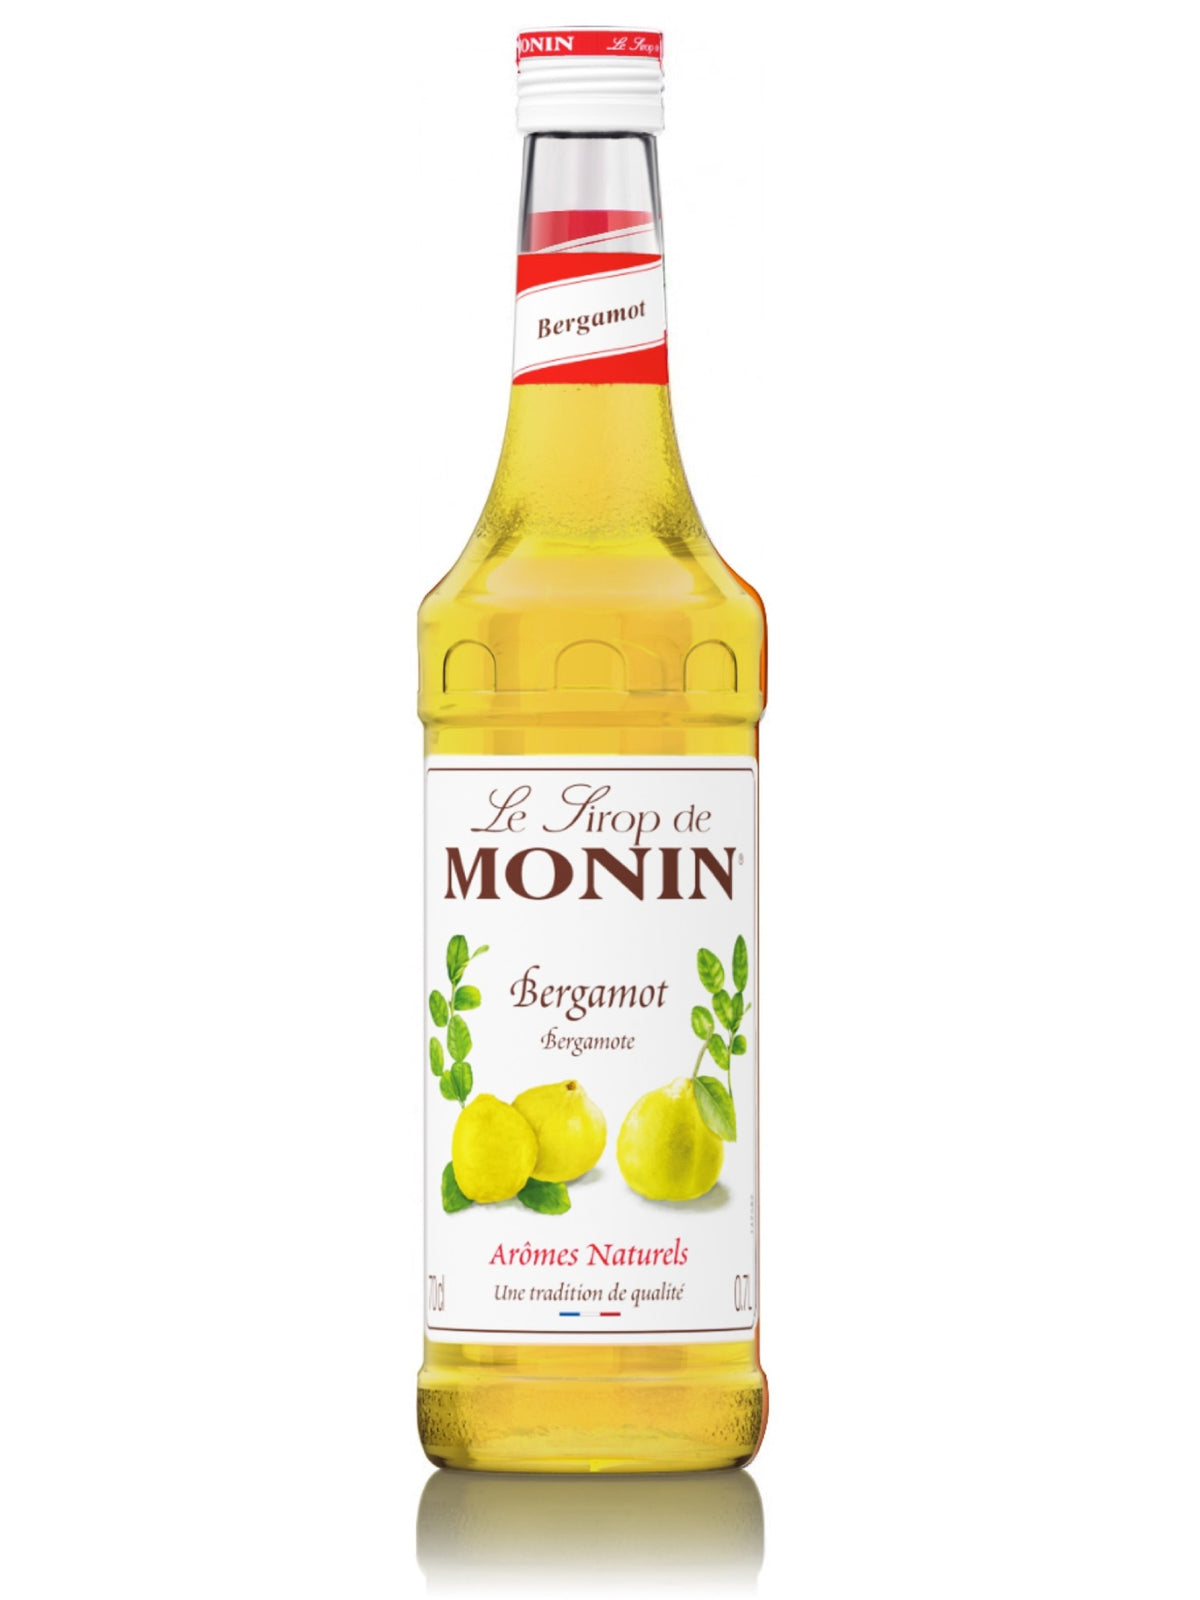 Prøv Monin Bergamotte Sirup for en unik og aromatisk twist til dine favoritdrinks